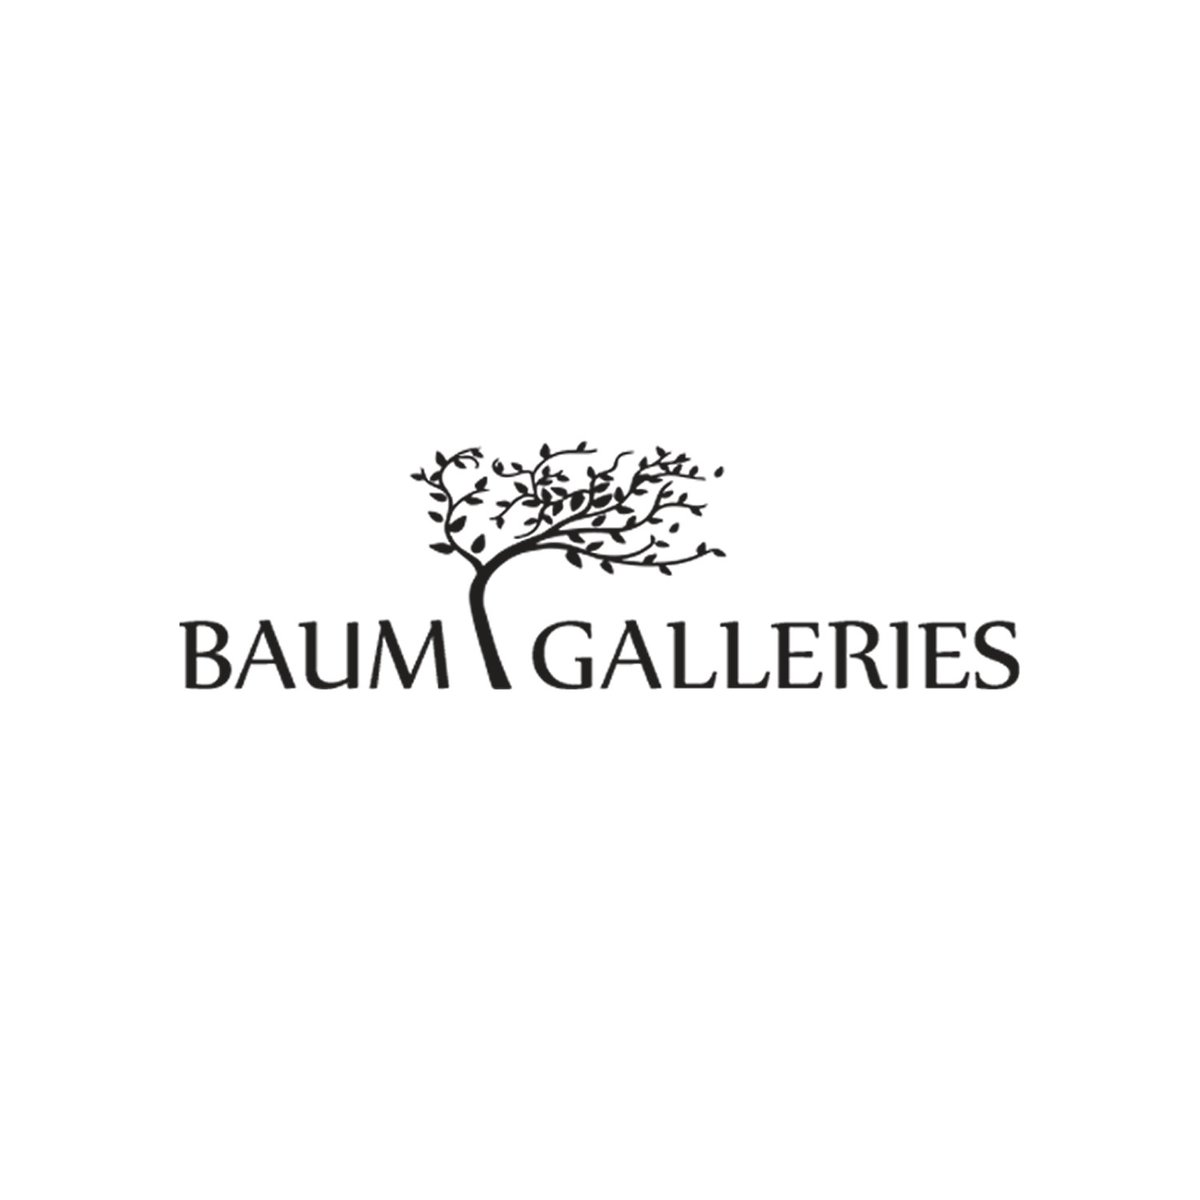 Baum Galleries